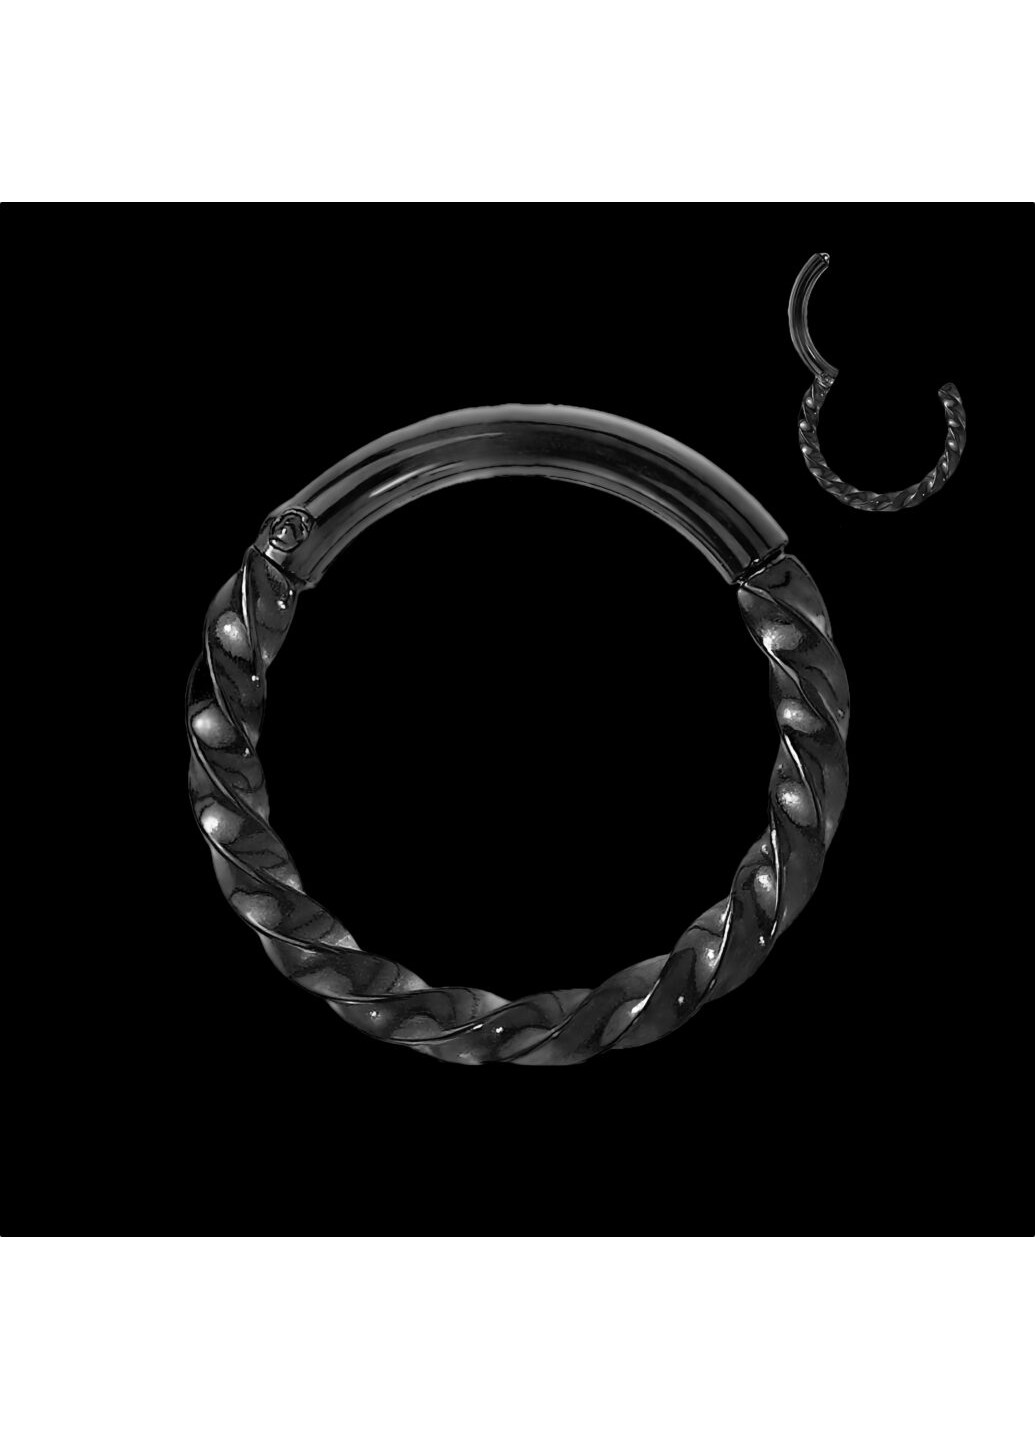 Кольцо кликер (спираль) из стали RH72 серьга для пирсинга септума носа, хряща уха, трагуса, хеликса, брови, губ цвет Черный Spikes (260395461)